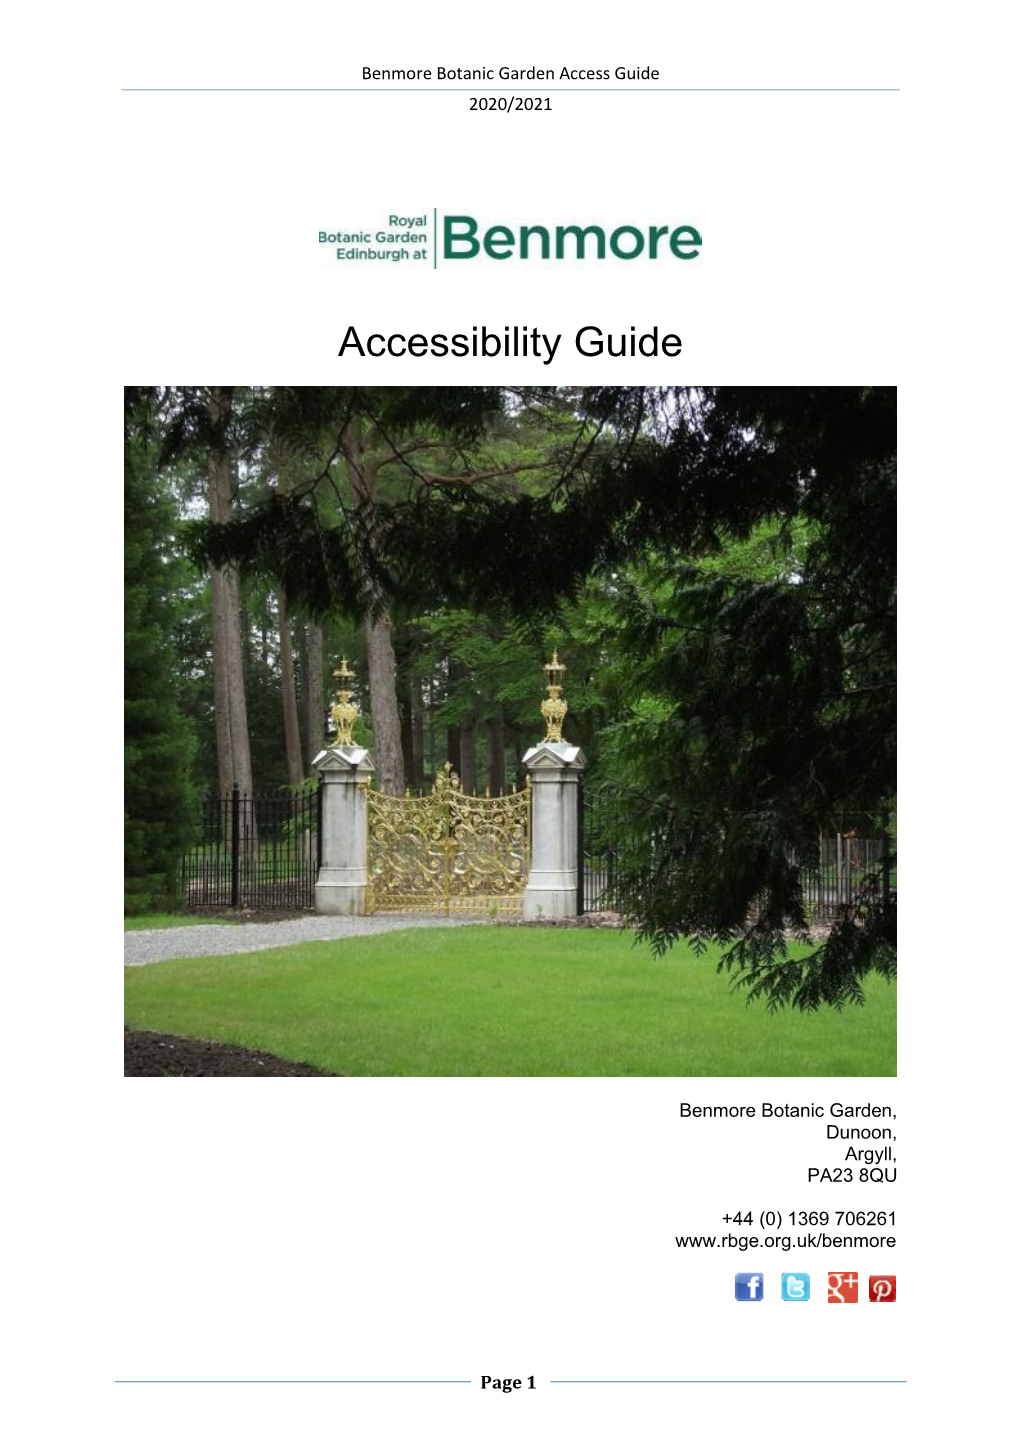 Benmore Botanic Garden Access Guide 2020/2021